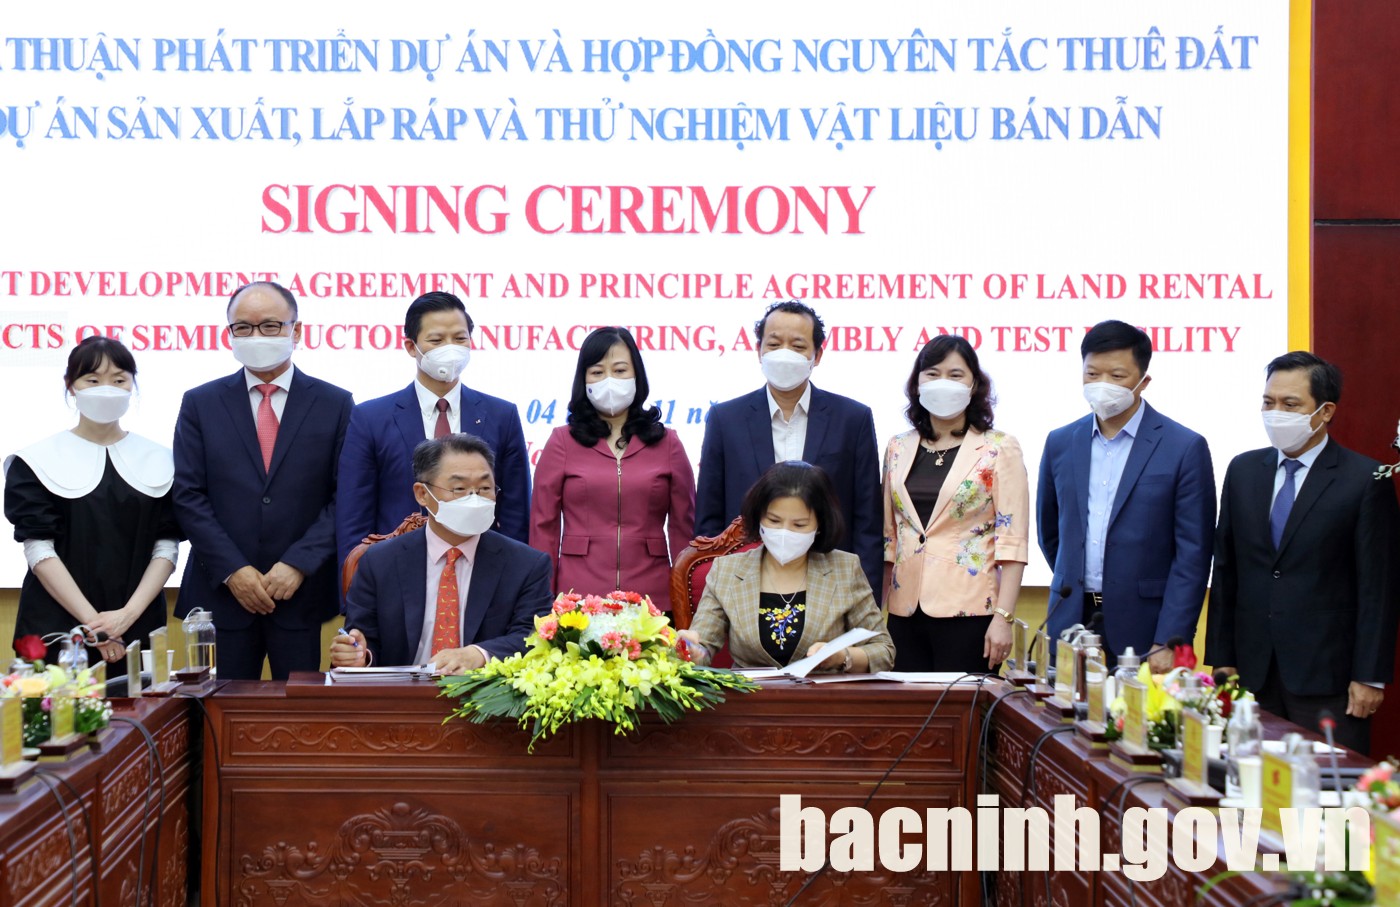 Lễ ký kết thoả thuận phát triển dự án Nhà máy sản xuất, lắp ráp và thử nghiệm vật liệu bán dẫn tại KCN Yên Phong II-C